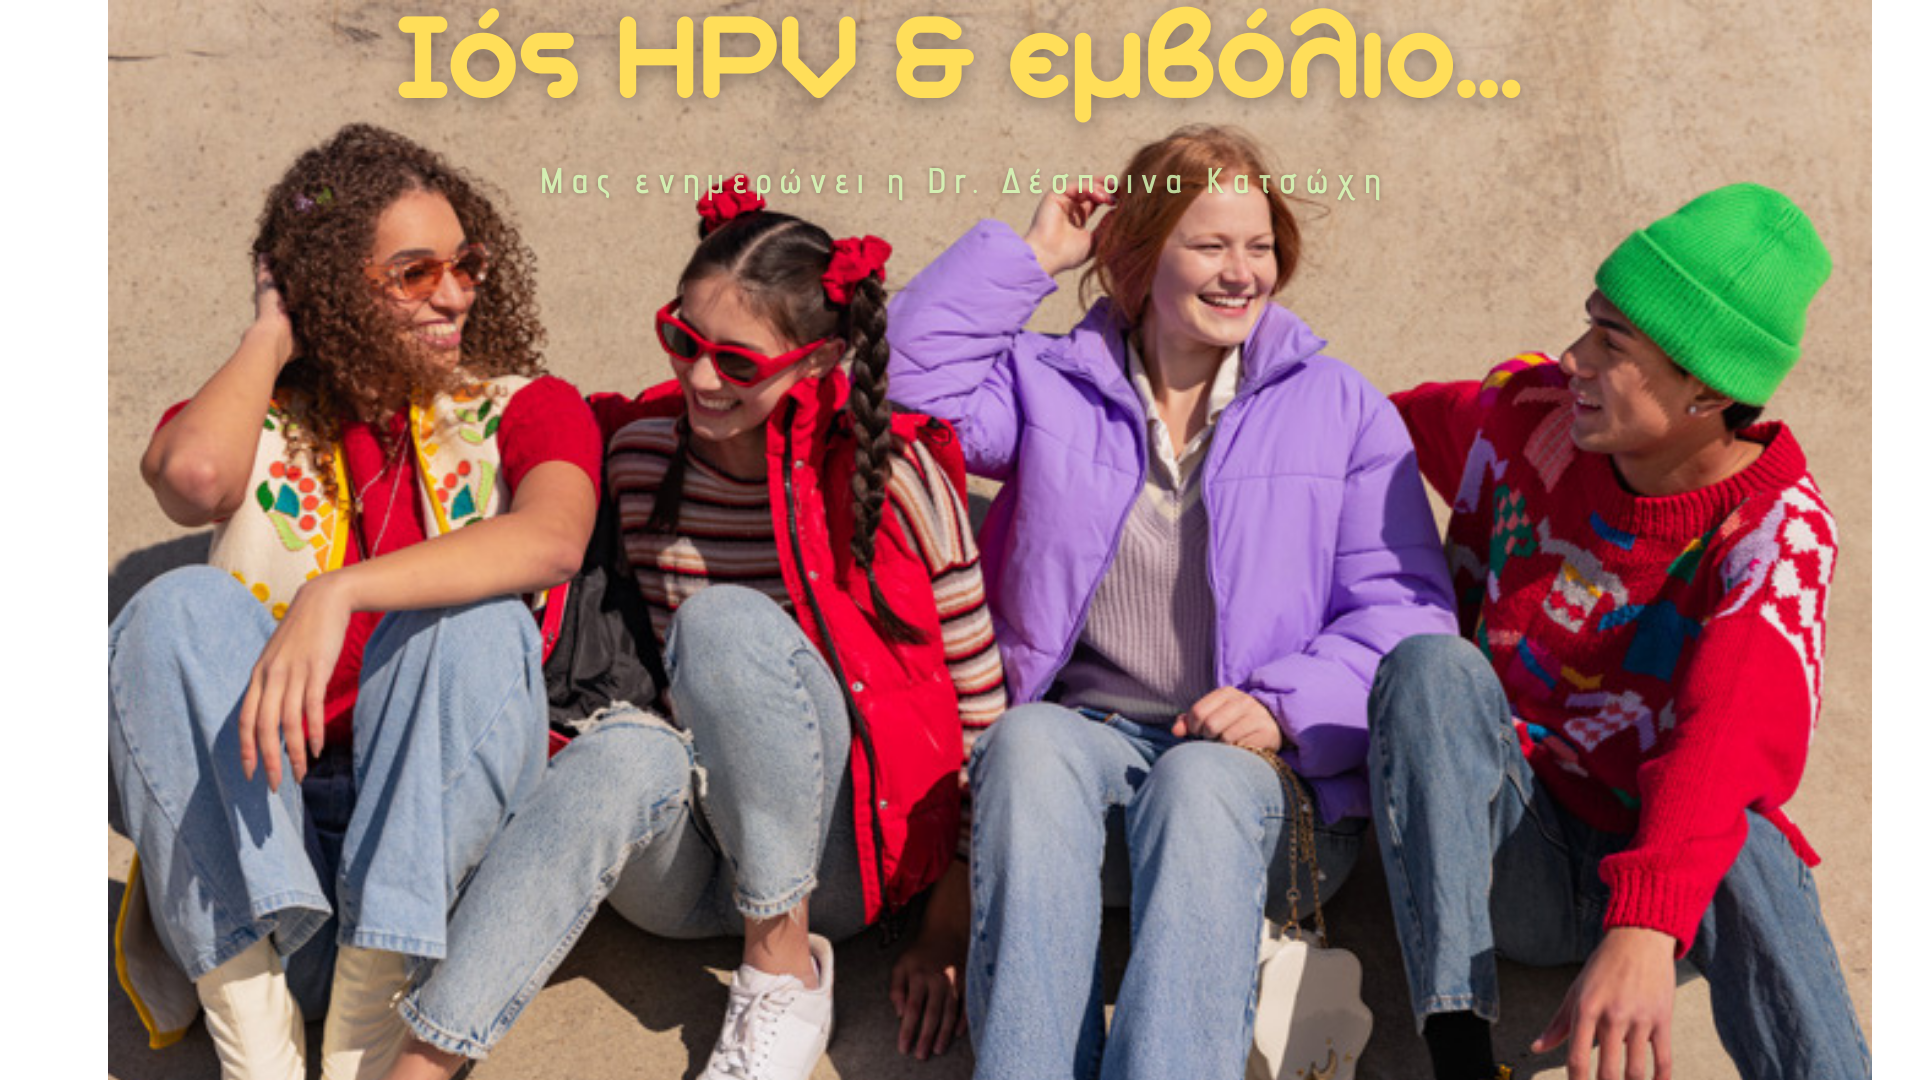 Ο ιός HPV και το εμβόλιο κατά του HPV.